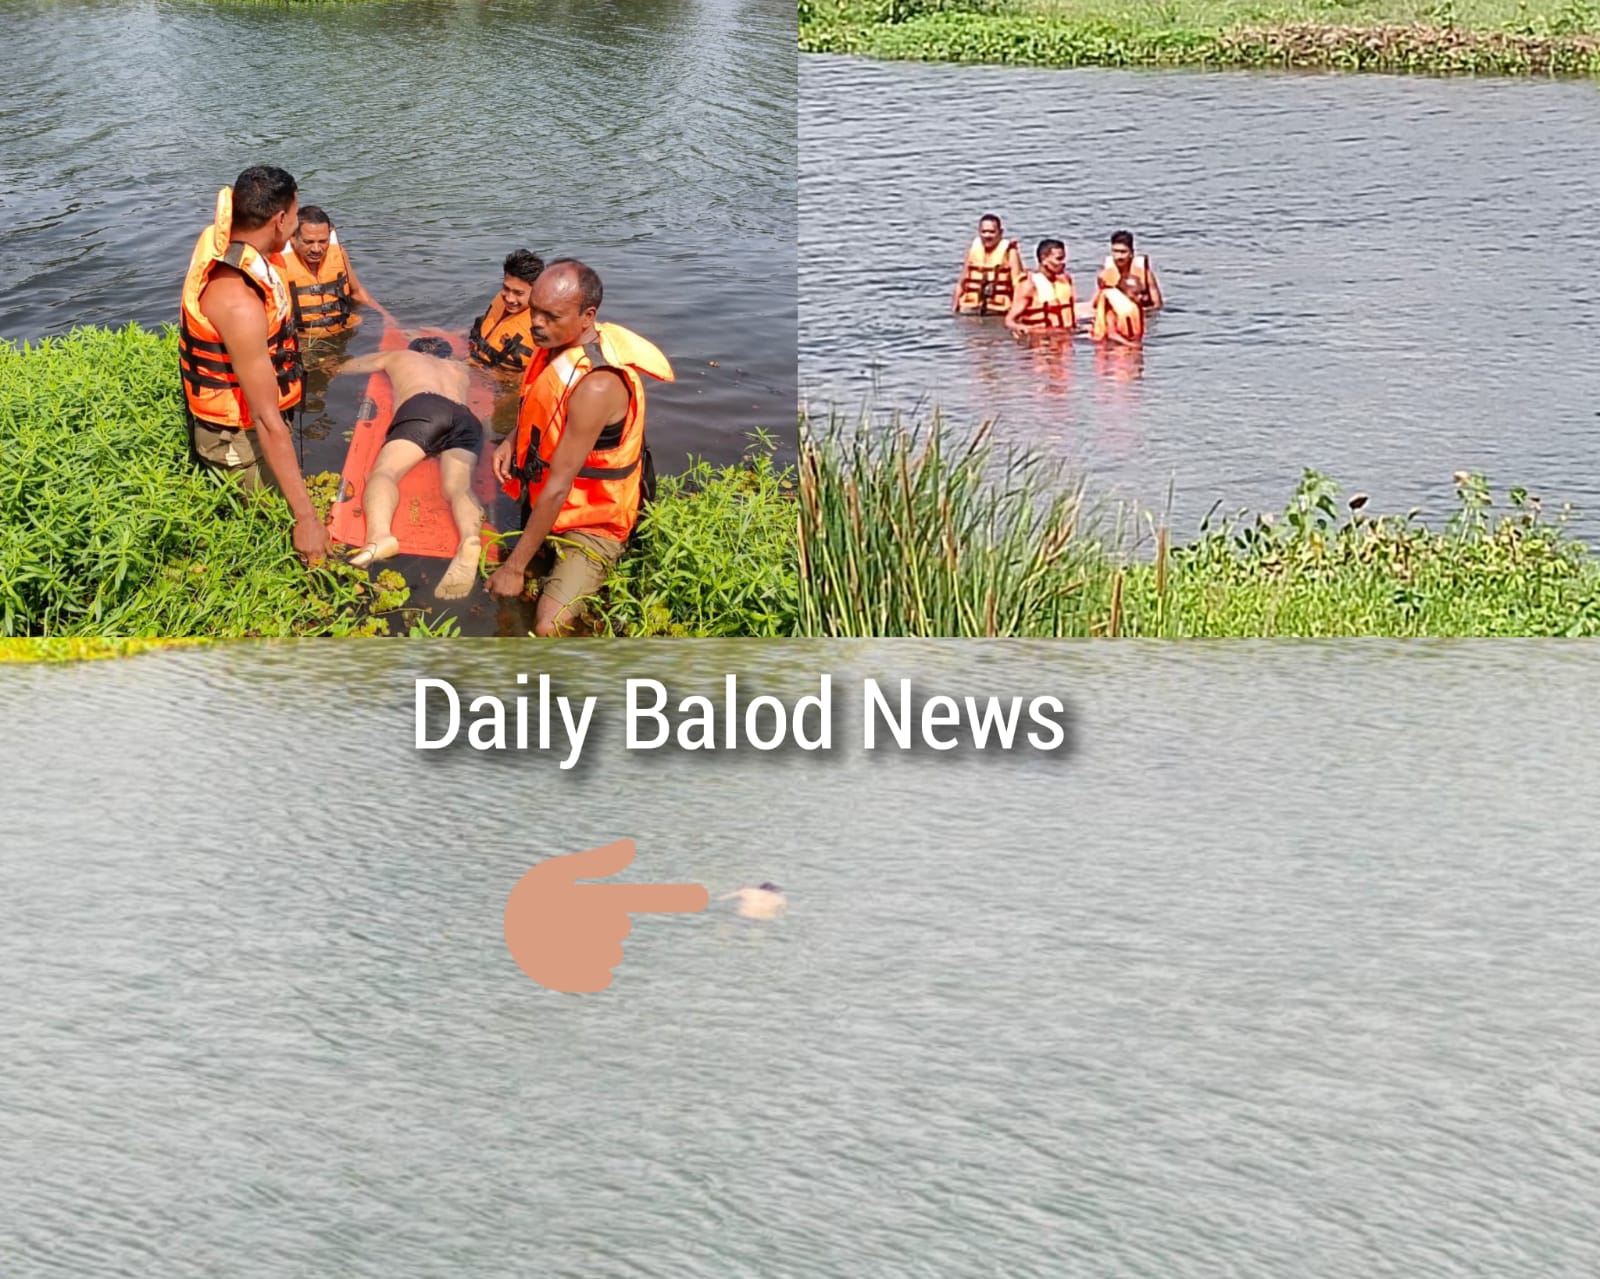 हीरापुर एनिकट के पास तांदुला नदी में हादसा: बेटे को तैरना सीखा रहा था पिता, खुद बह गया, जलकुंभी में फंसने से मौत